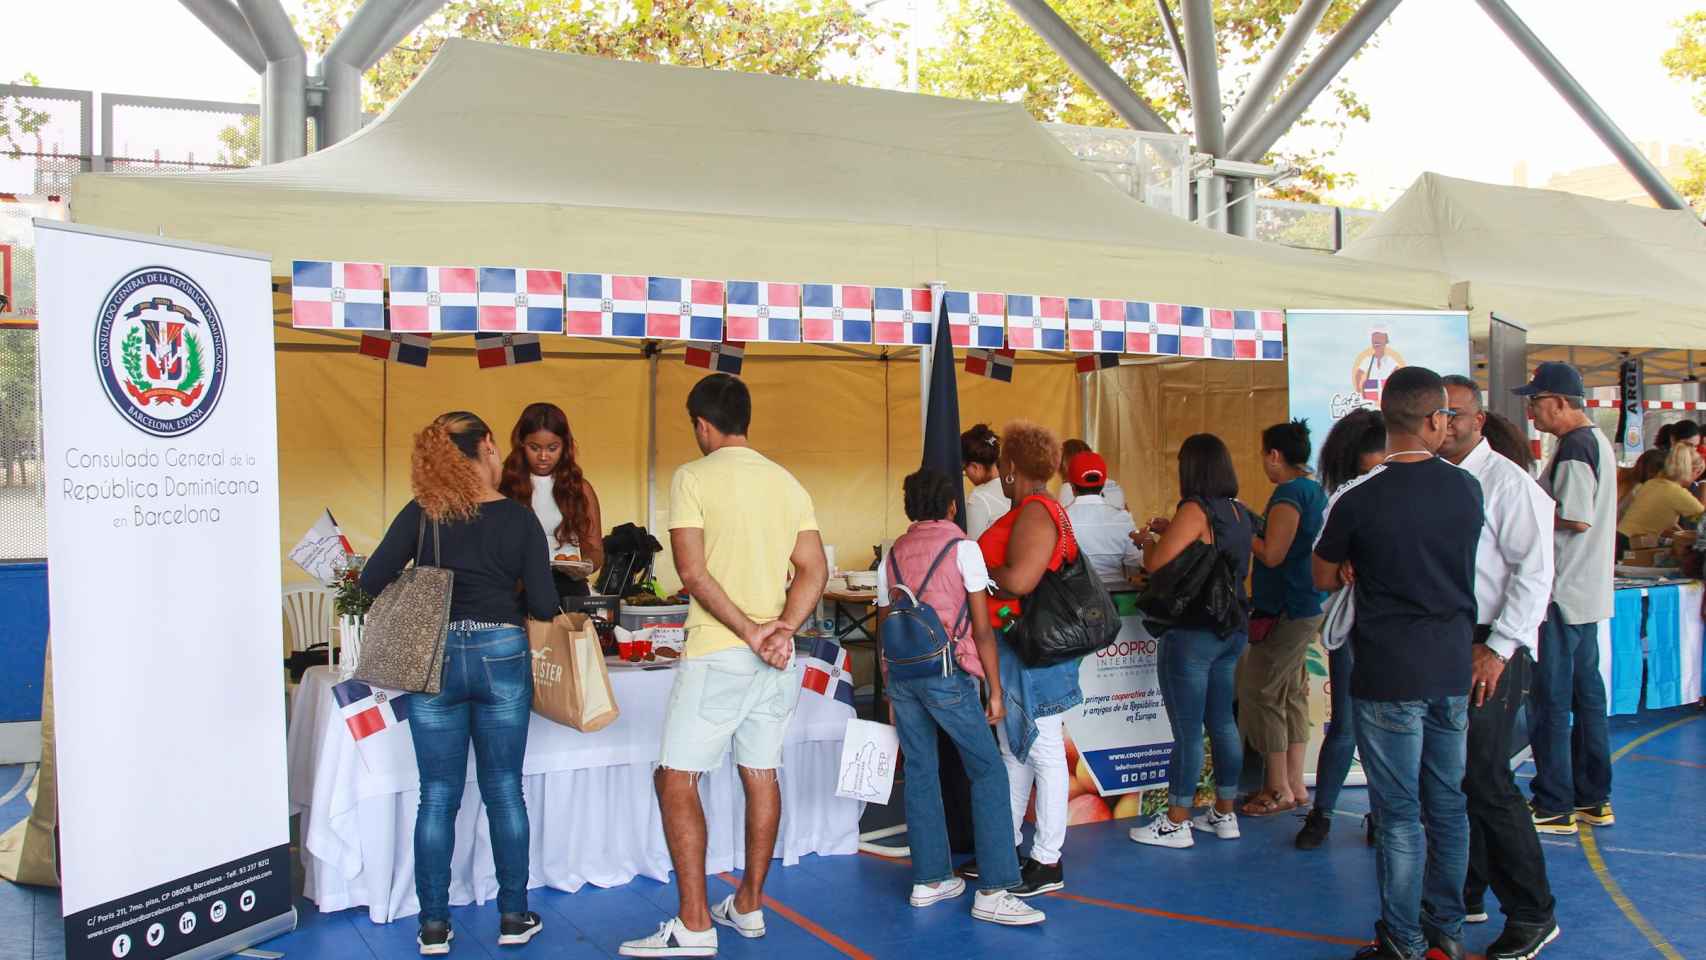 El stand de la República Dominicana ha estado muy concurrido durante el torneo Consular / HUGO FERNÁNDEZ